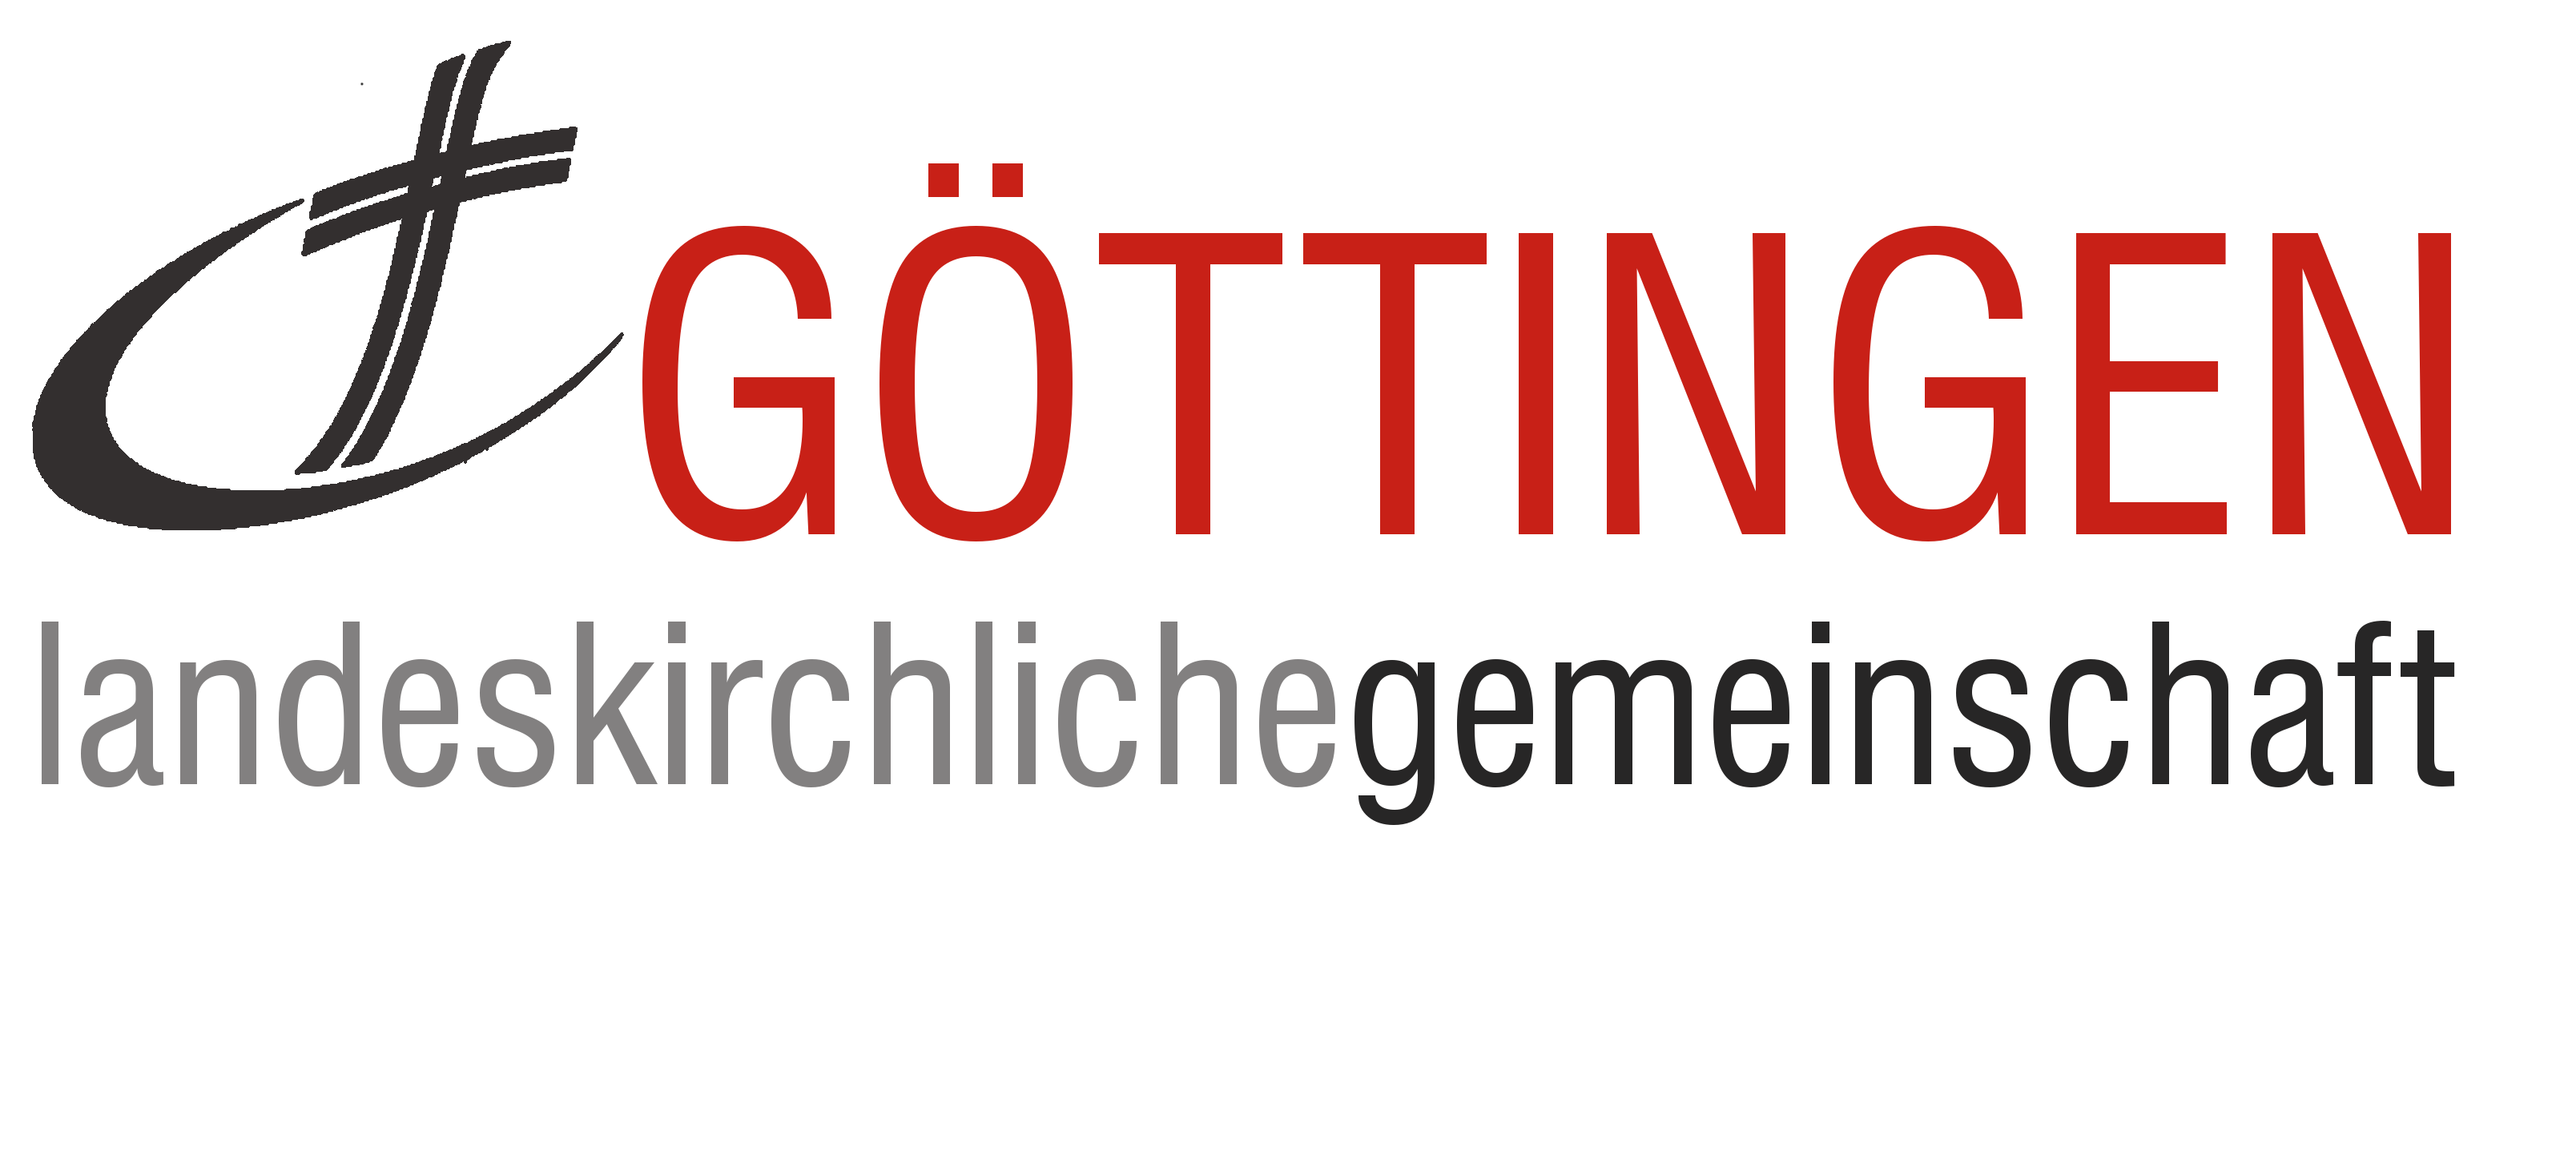 Landeskirchliche Gemeinschaft Göttingen